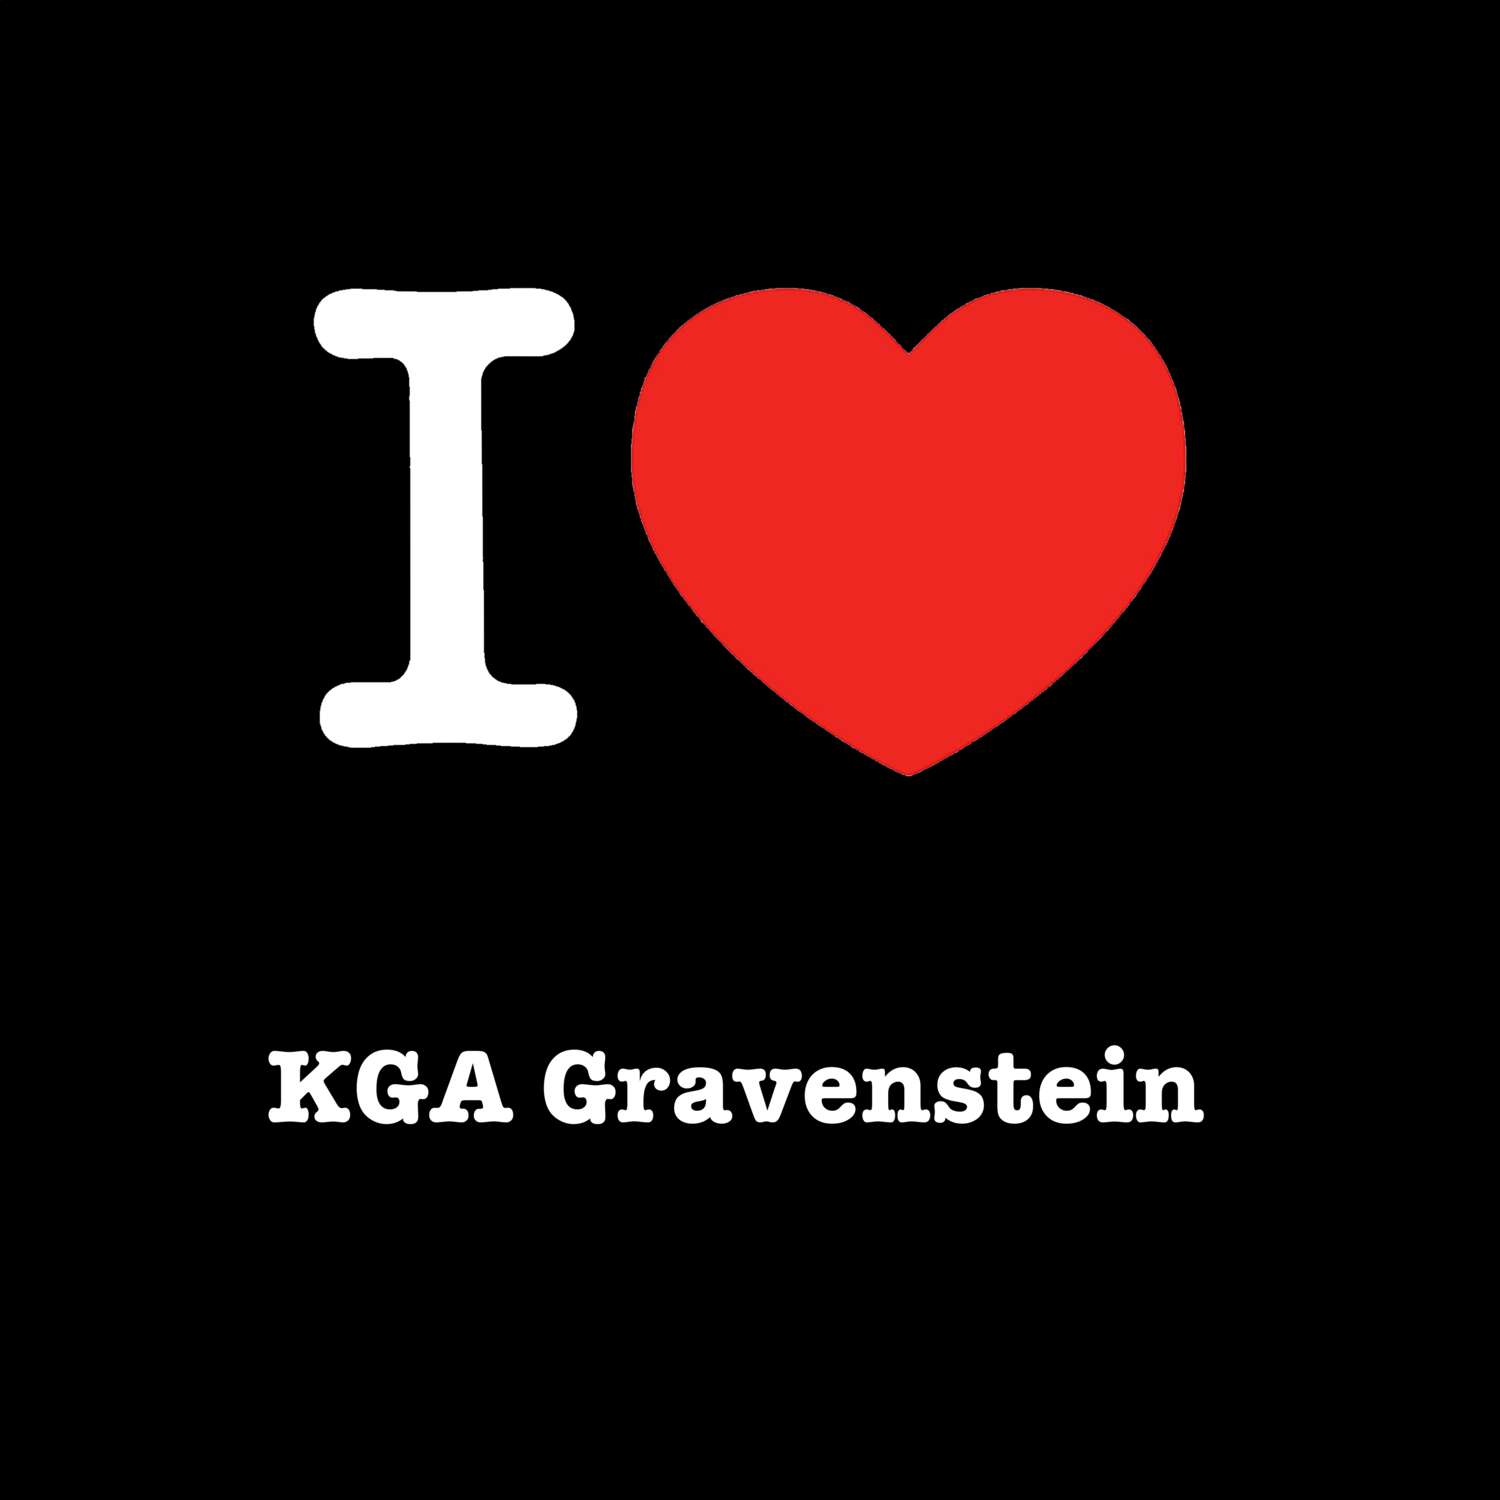 KGA Gravenstein T-Shirt »I love«